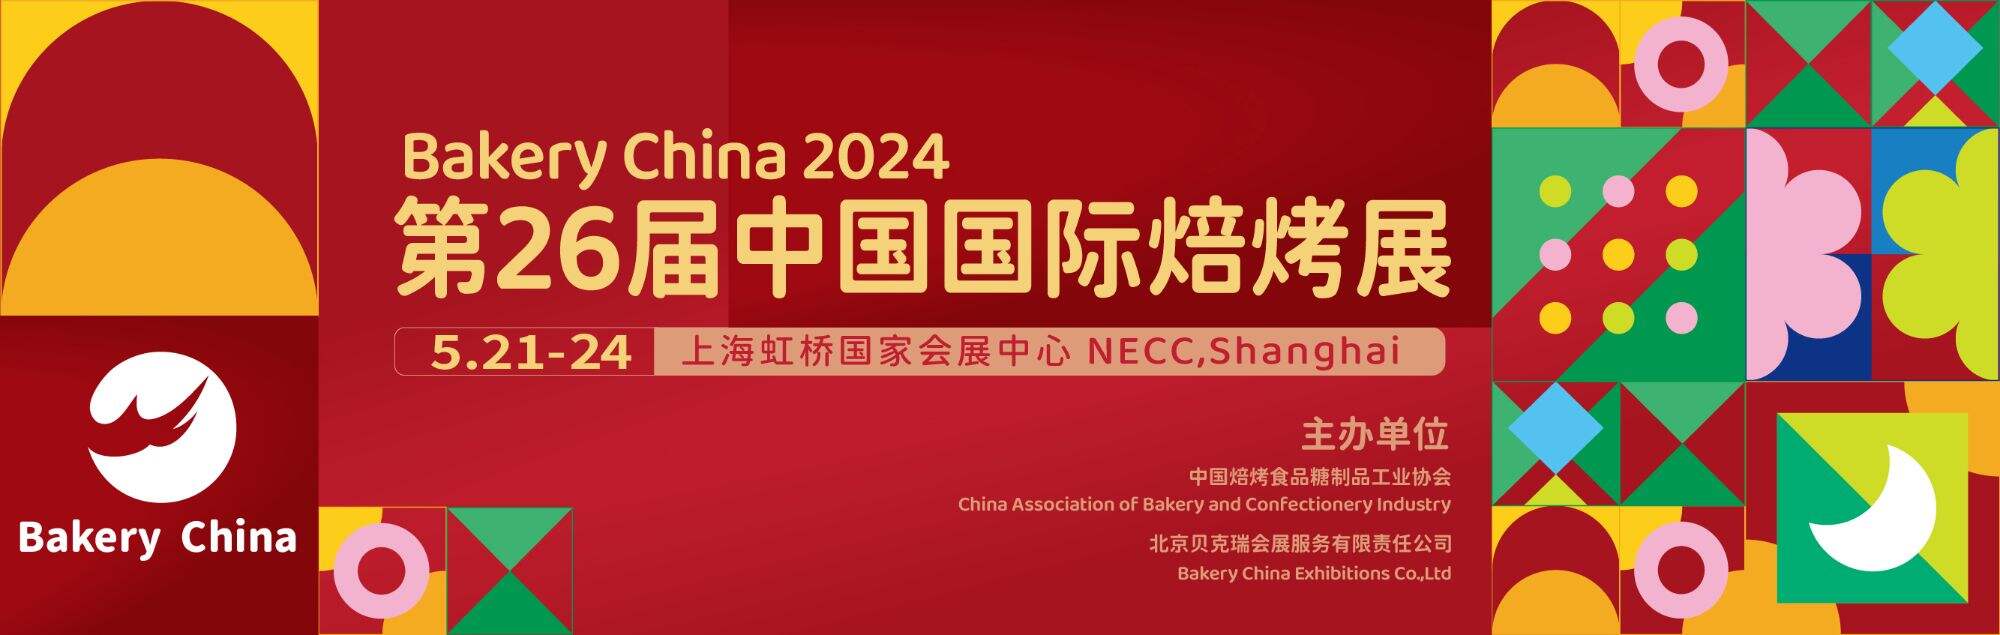 Exhibition Preview:Bakery China 2024 Mayo 21-24 Sa Shanghai